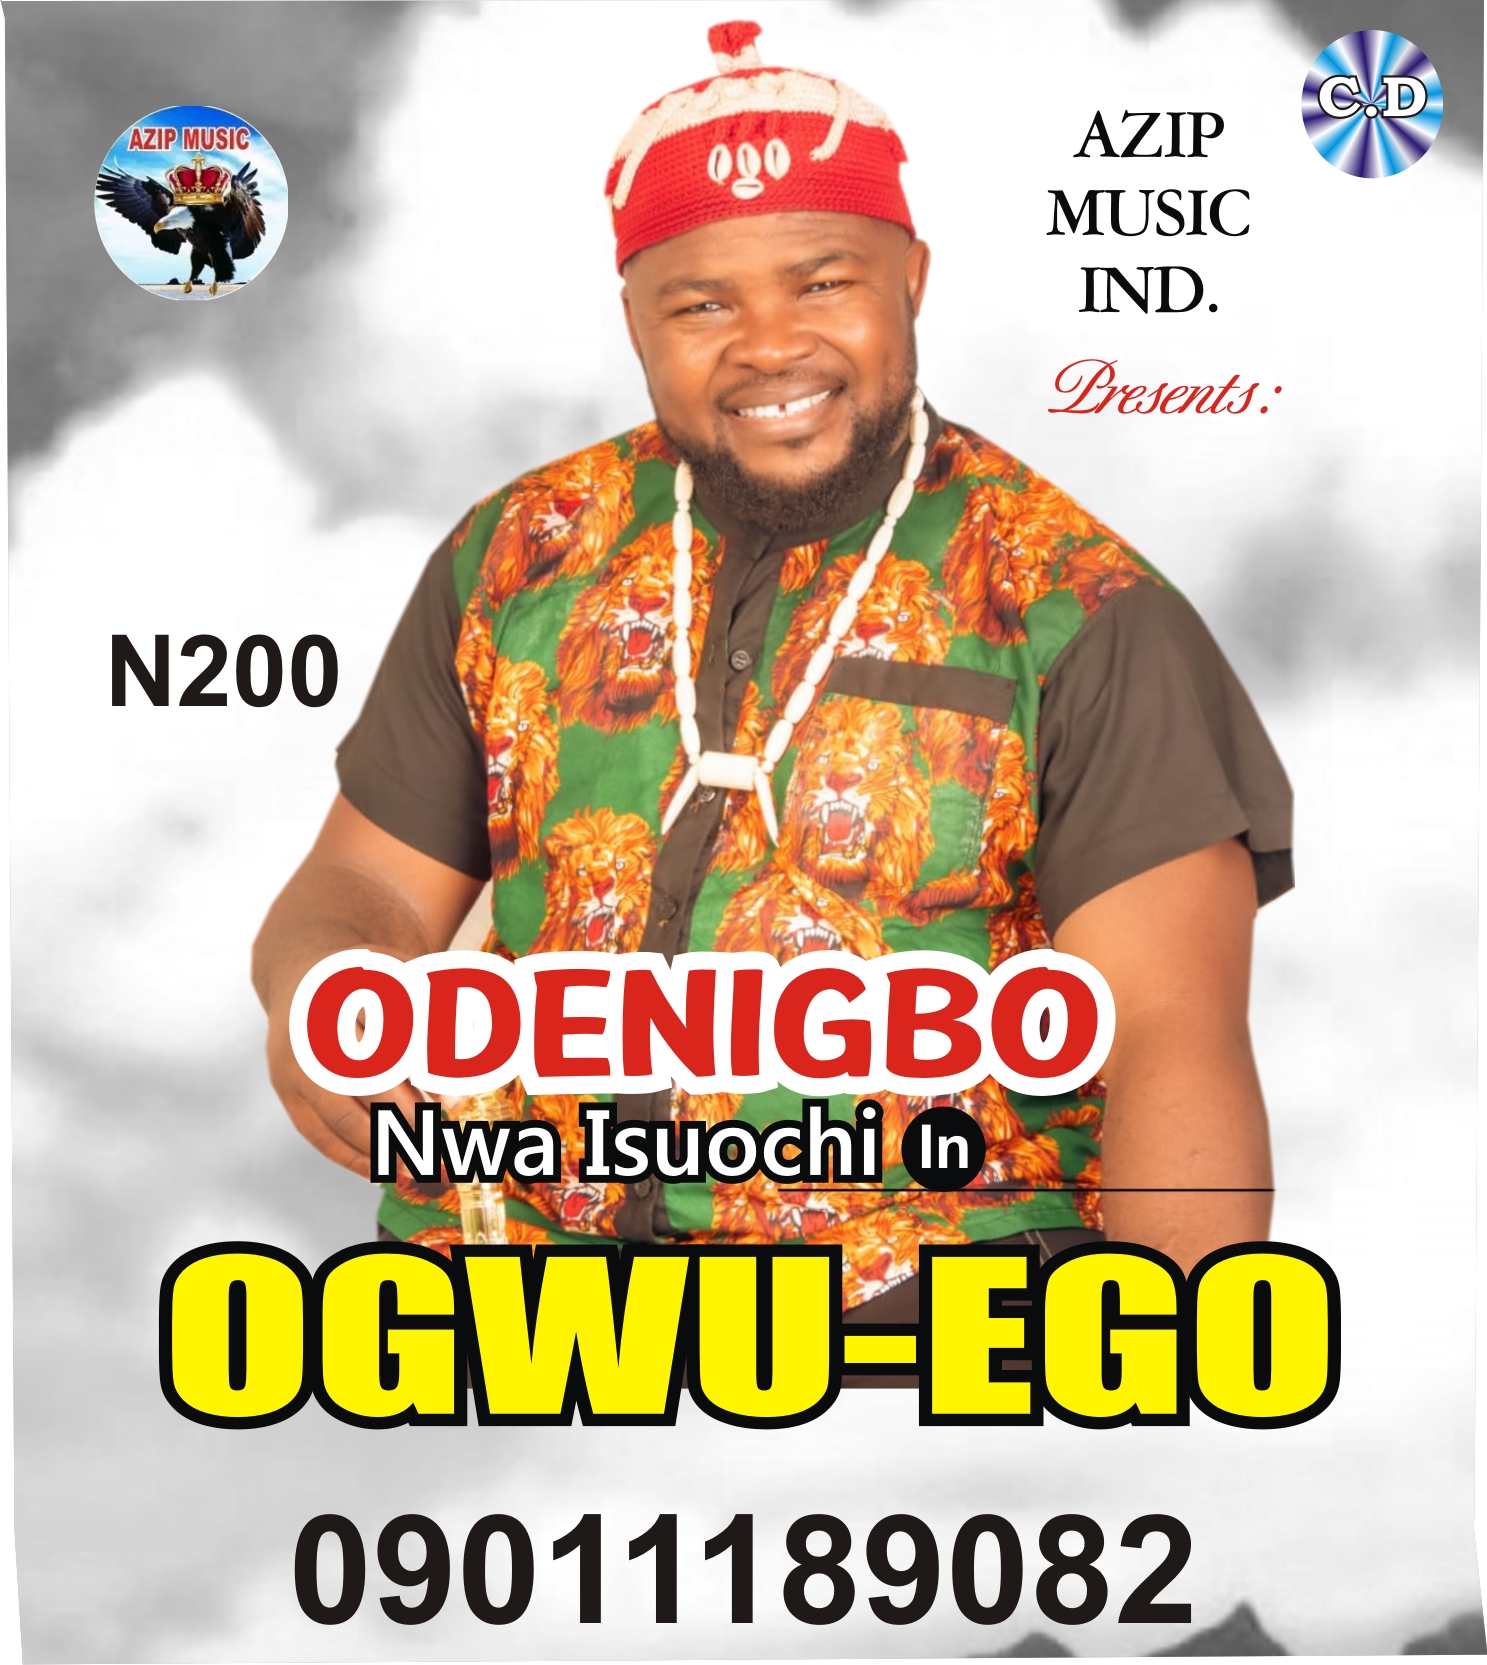 Ogwu Ego